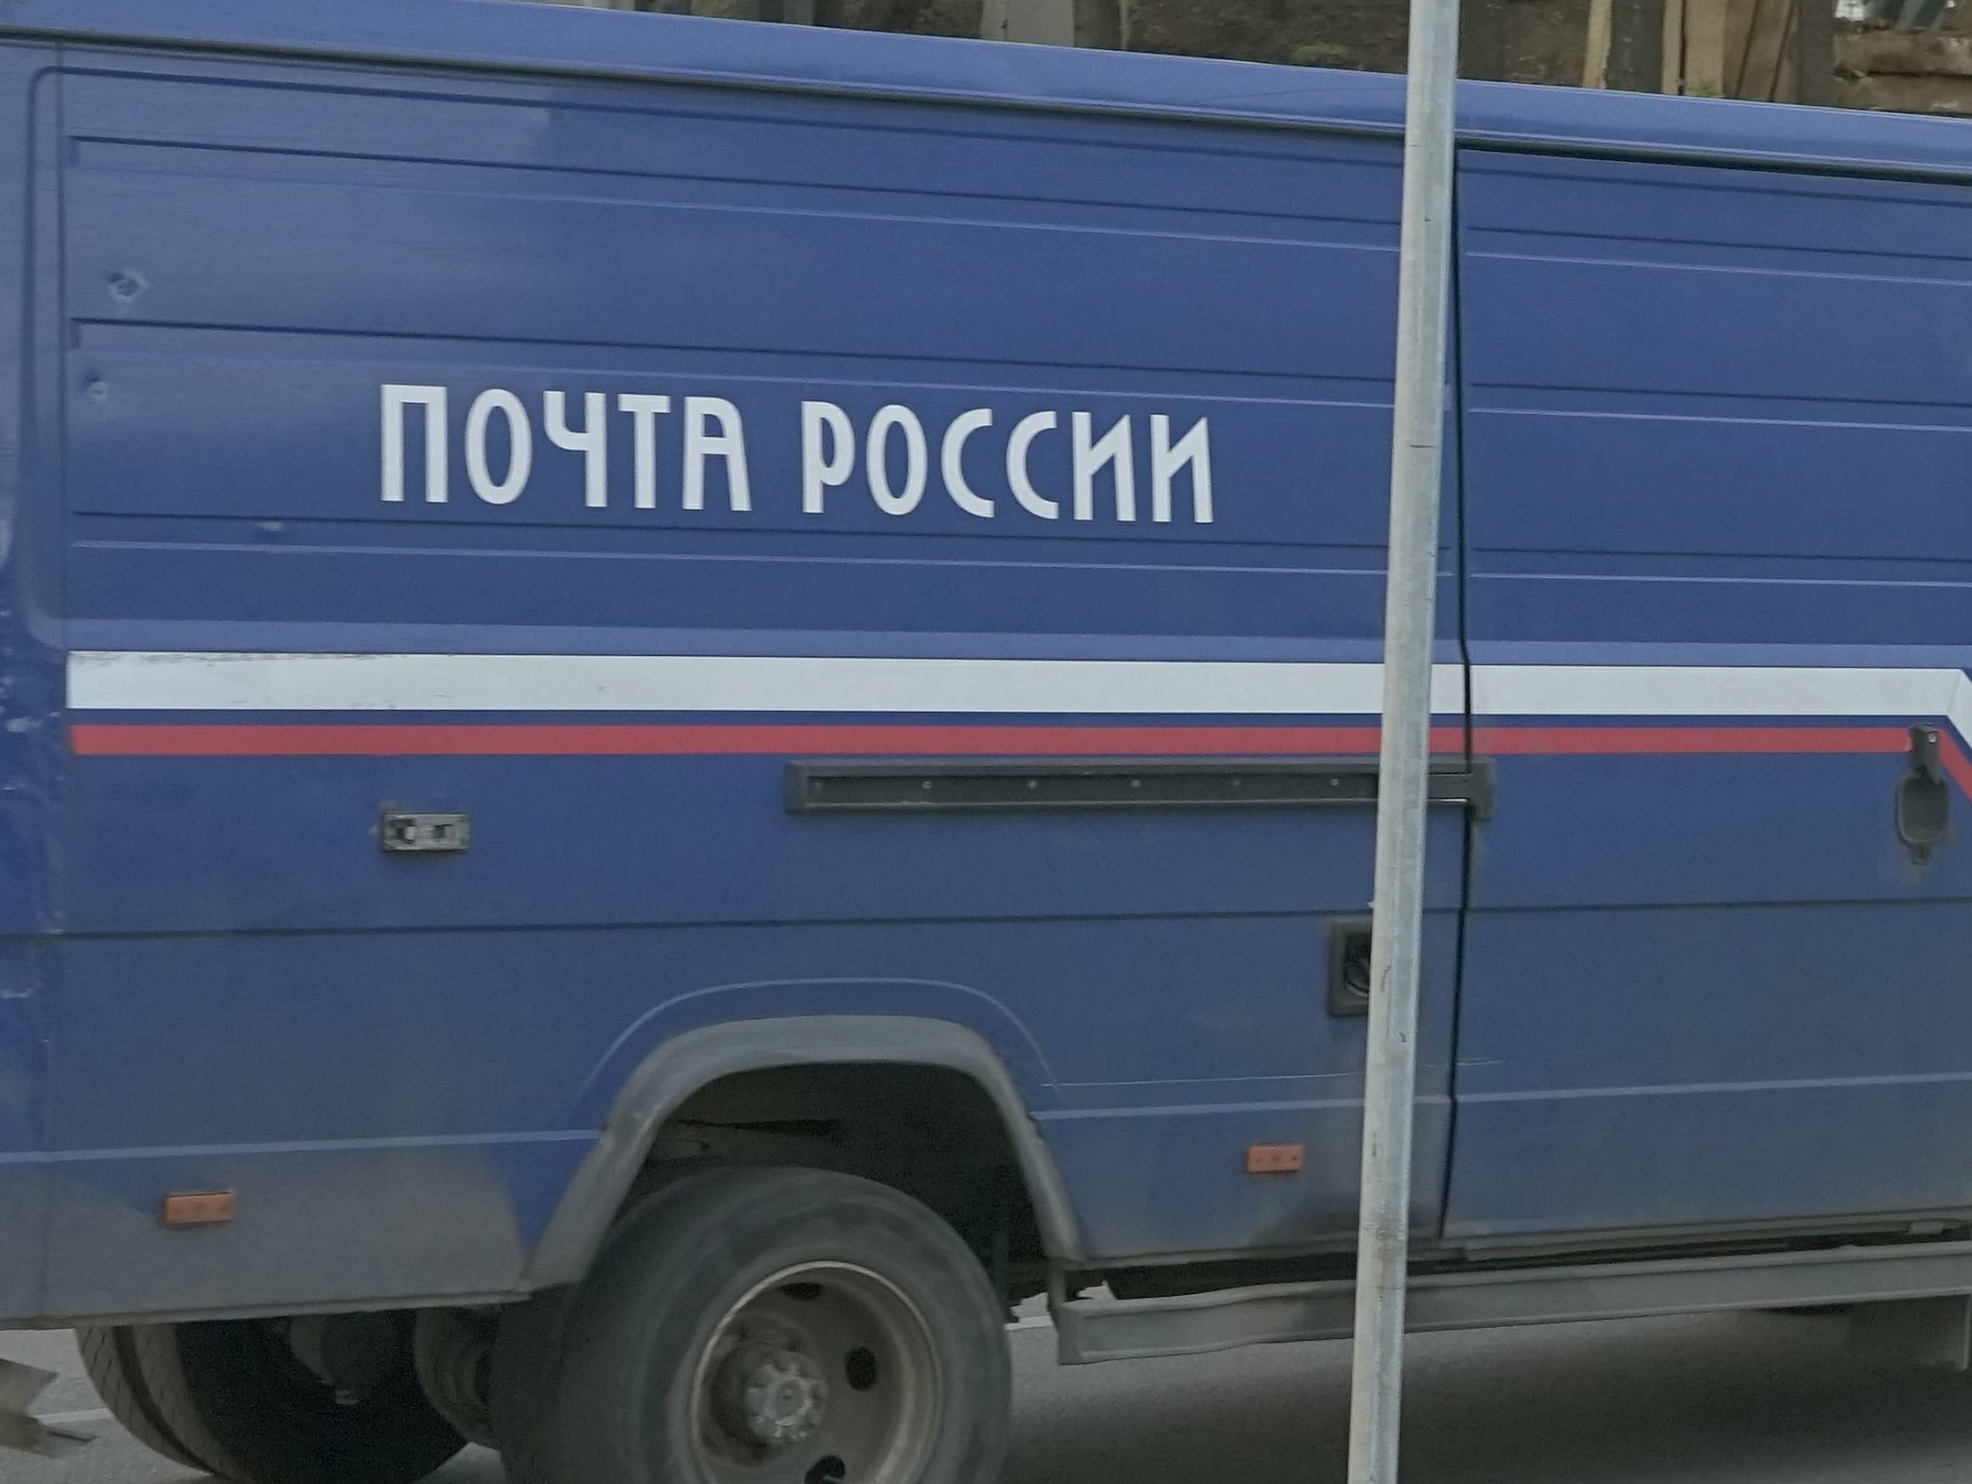 Неизвестные похитили посылки из машины «Почты России» в центре Москвы, фото